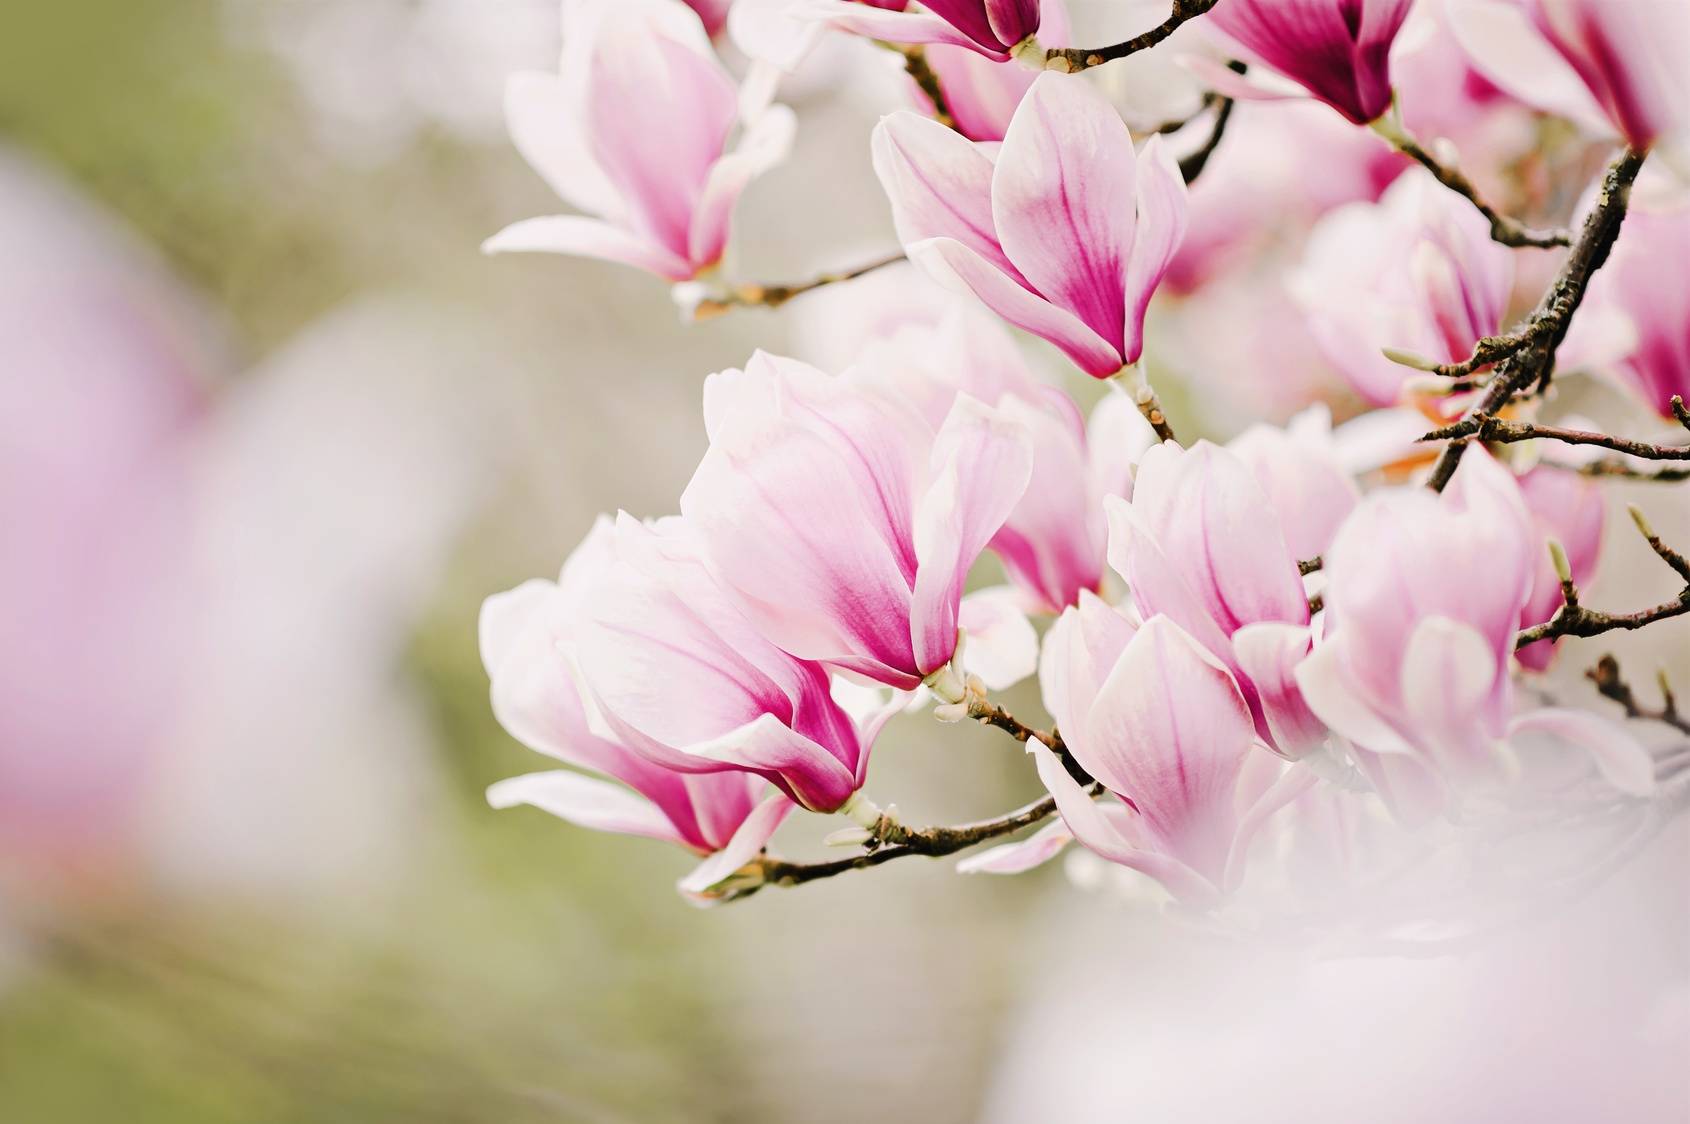 Drzewo magnolii, kwiat magnolii. Jakie właściwości i zastosowanie w lecznictwie ma magnolia lekarska? Kwiaty magnolii na gałęziach drzewa.